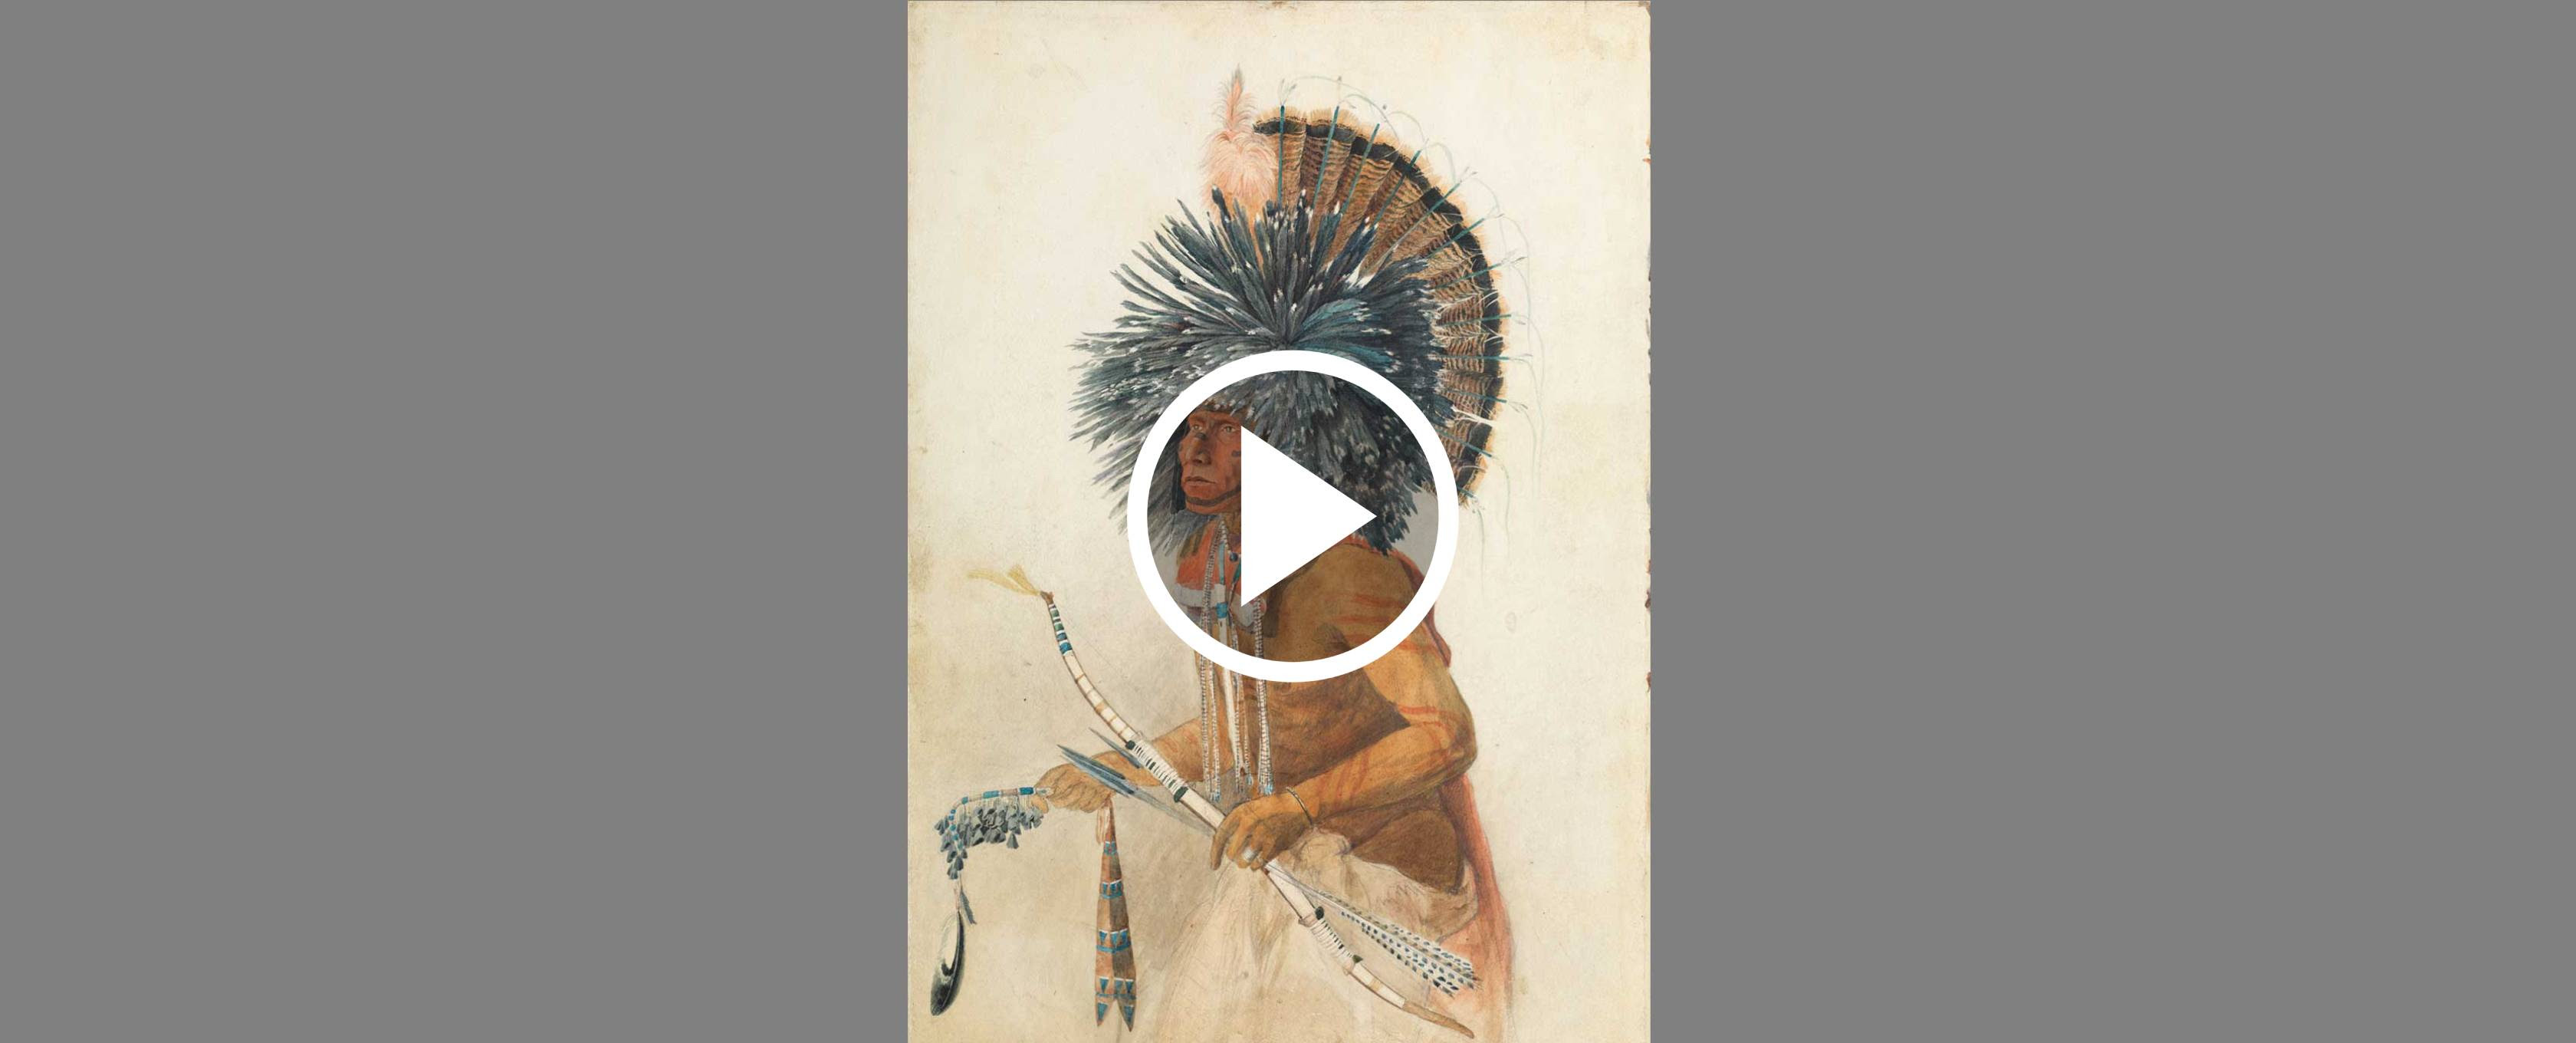 Indígena usando cocar tradicional, arco e flecha, aquarela e grafite sobre papel.